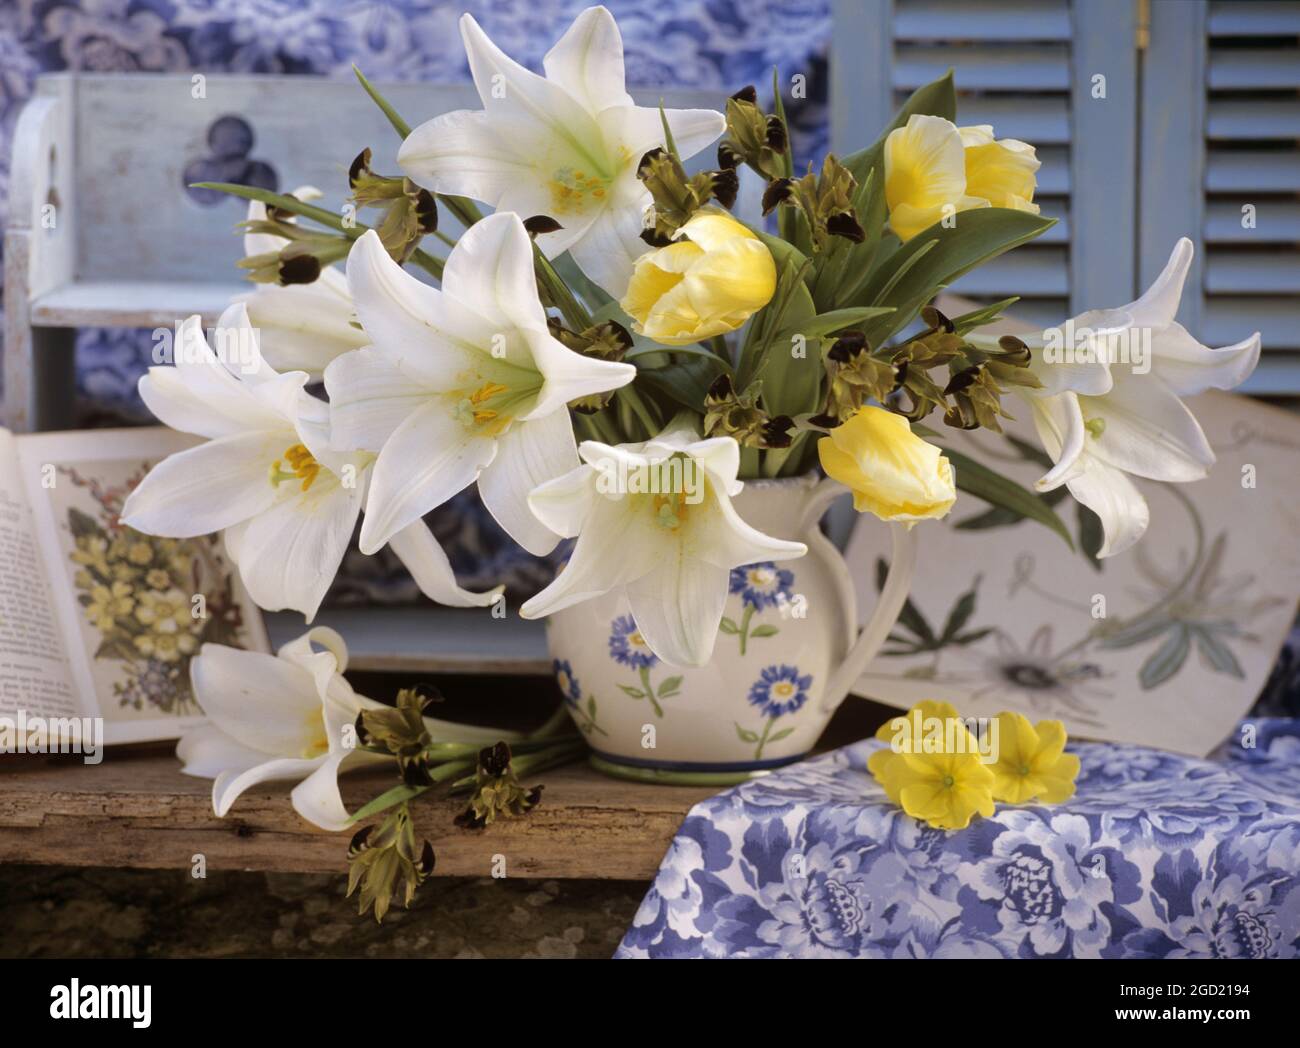 botanik, weiße lilium, ZUSÄTZLICHE-RIGHTS-CLEARANCE-INFO-NOT-AVAILABLE Stockfoto